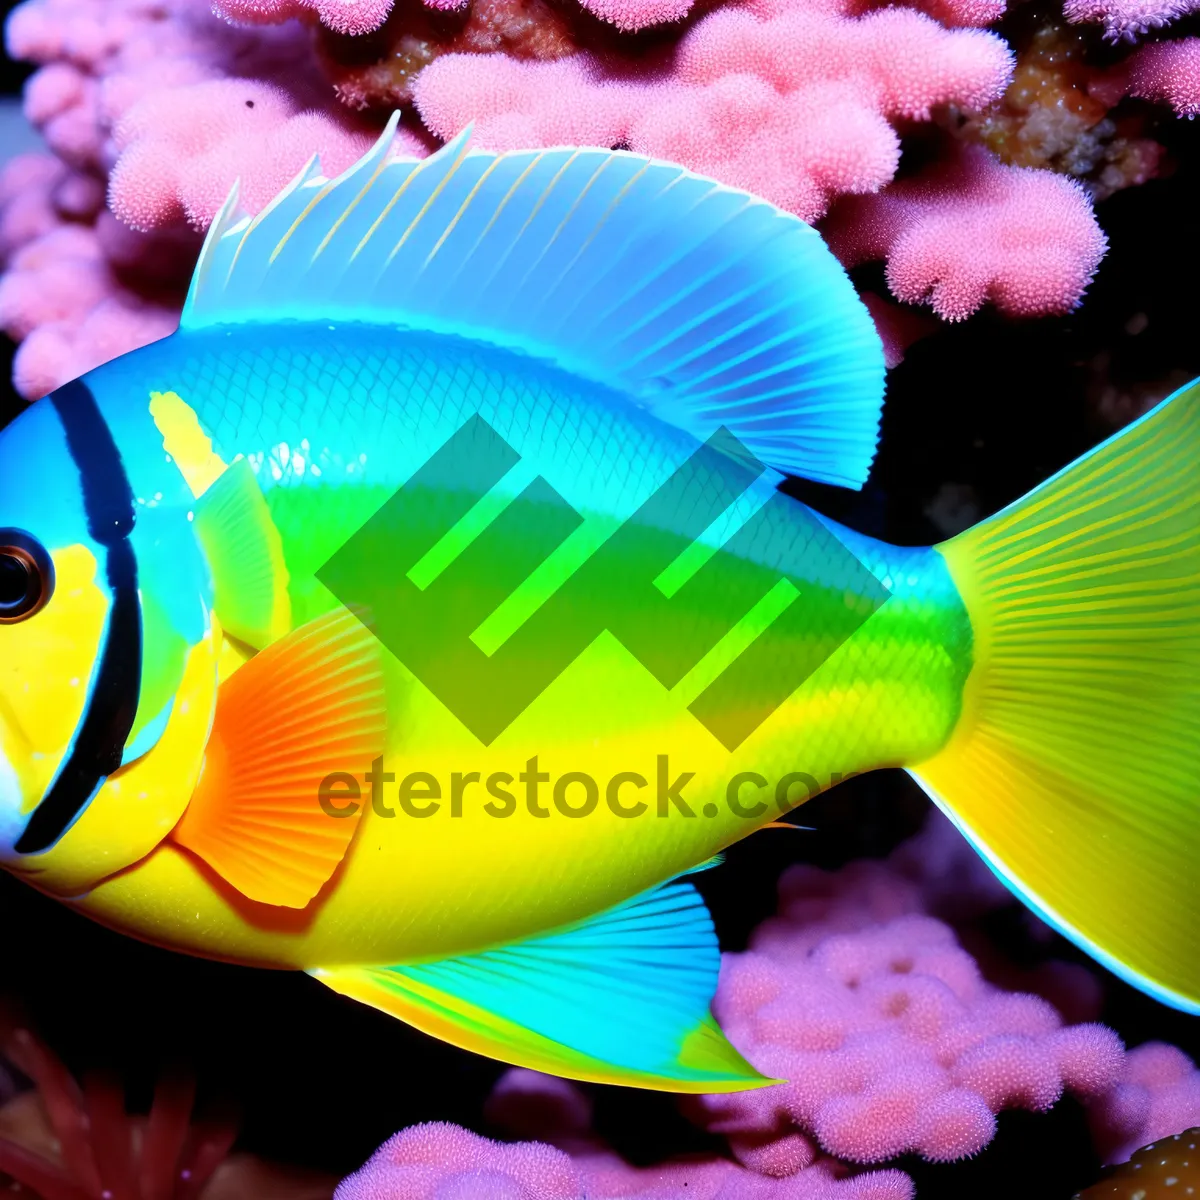 Picture of Vibrant Marine Life: Colorful Exotic Fish in Saltwater Aquarium.